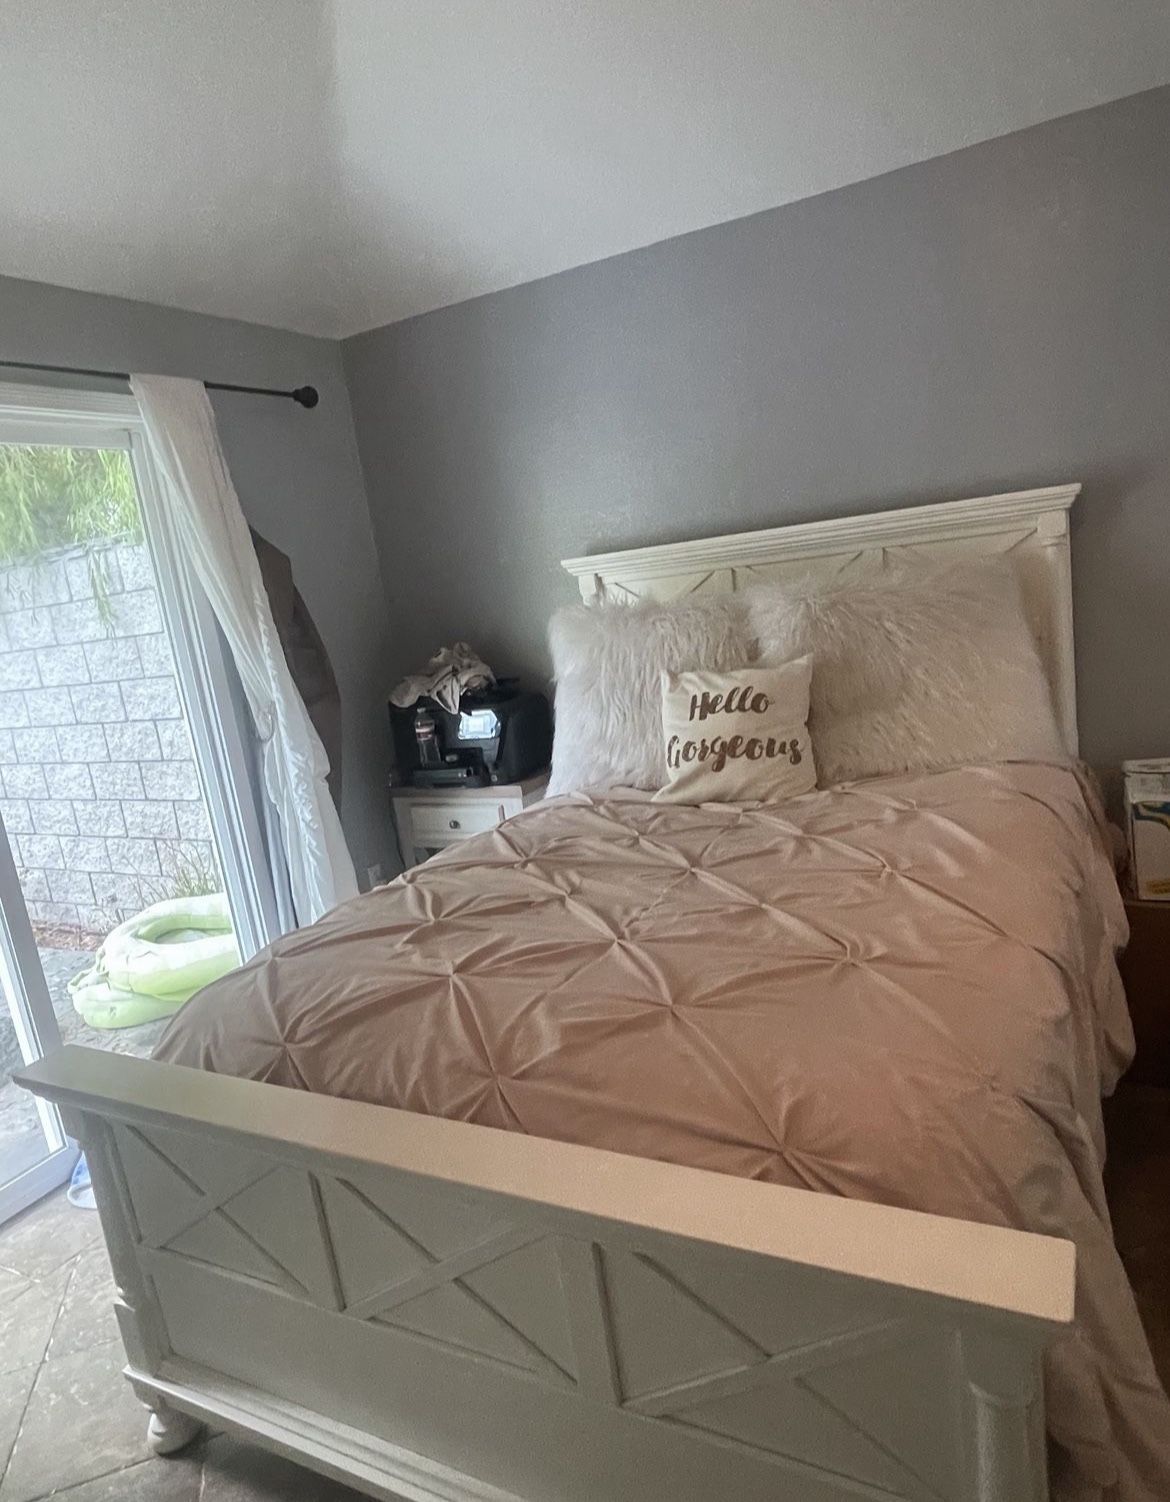 Full white Bed And Dresser